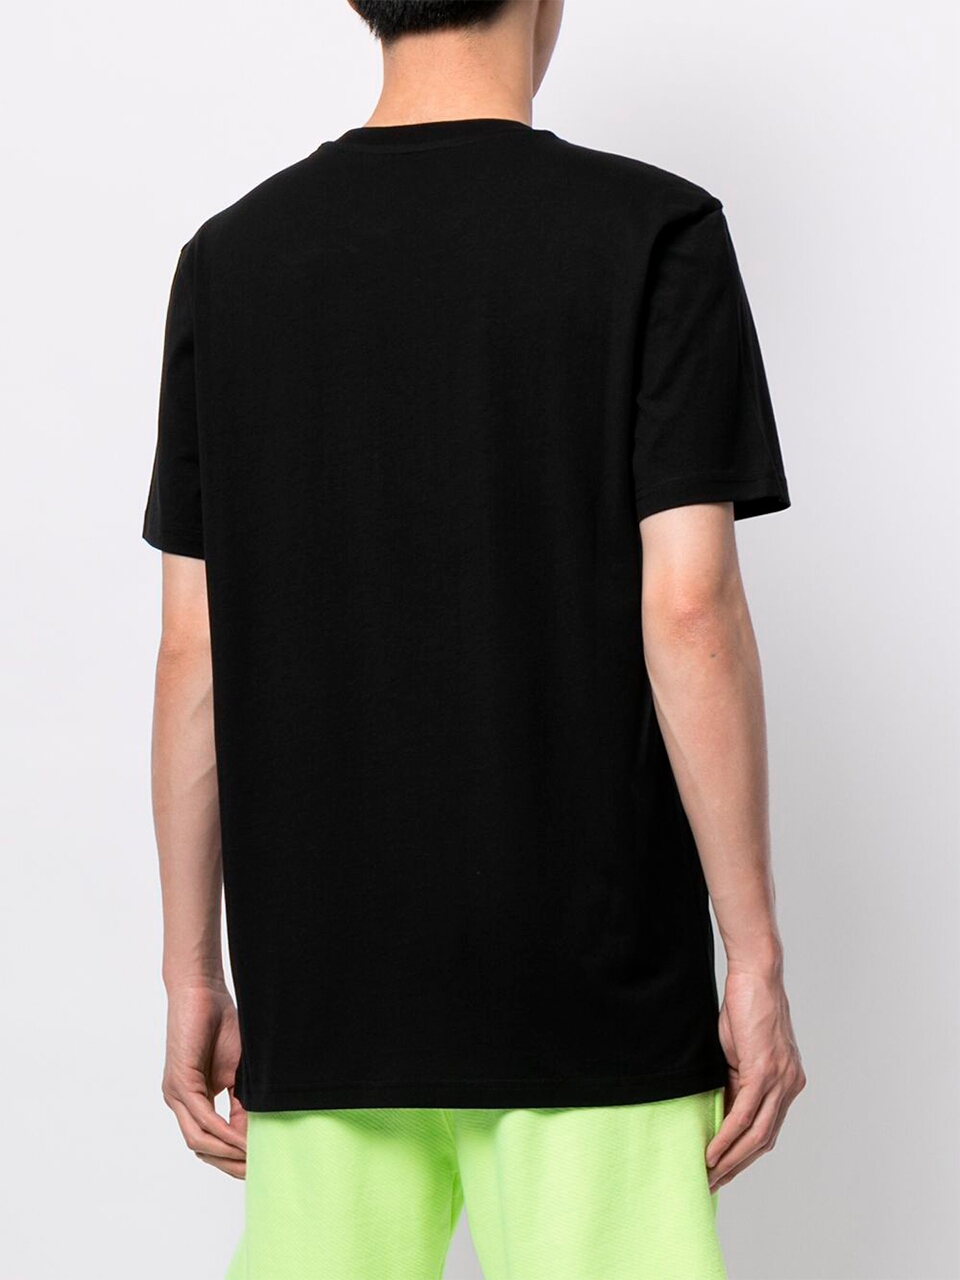 Imagem de: Camiseta Moschino Preta com Logo Cristal